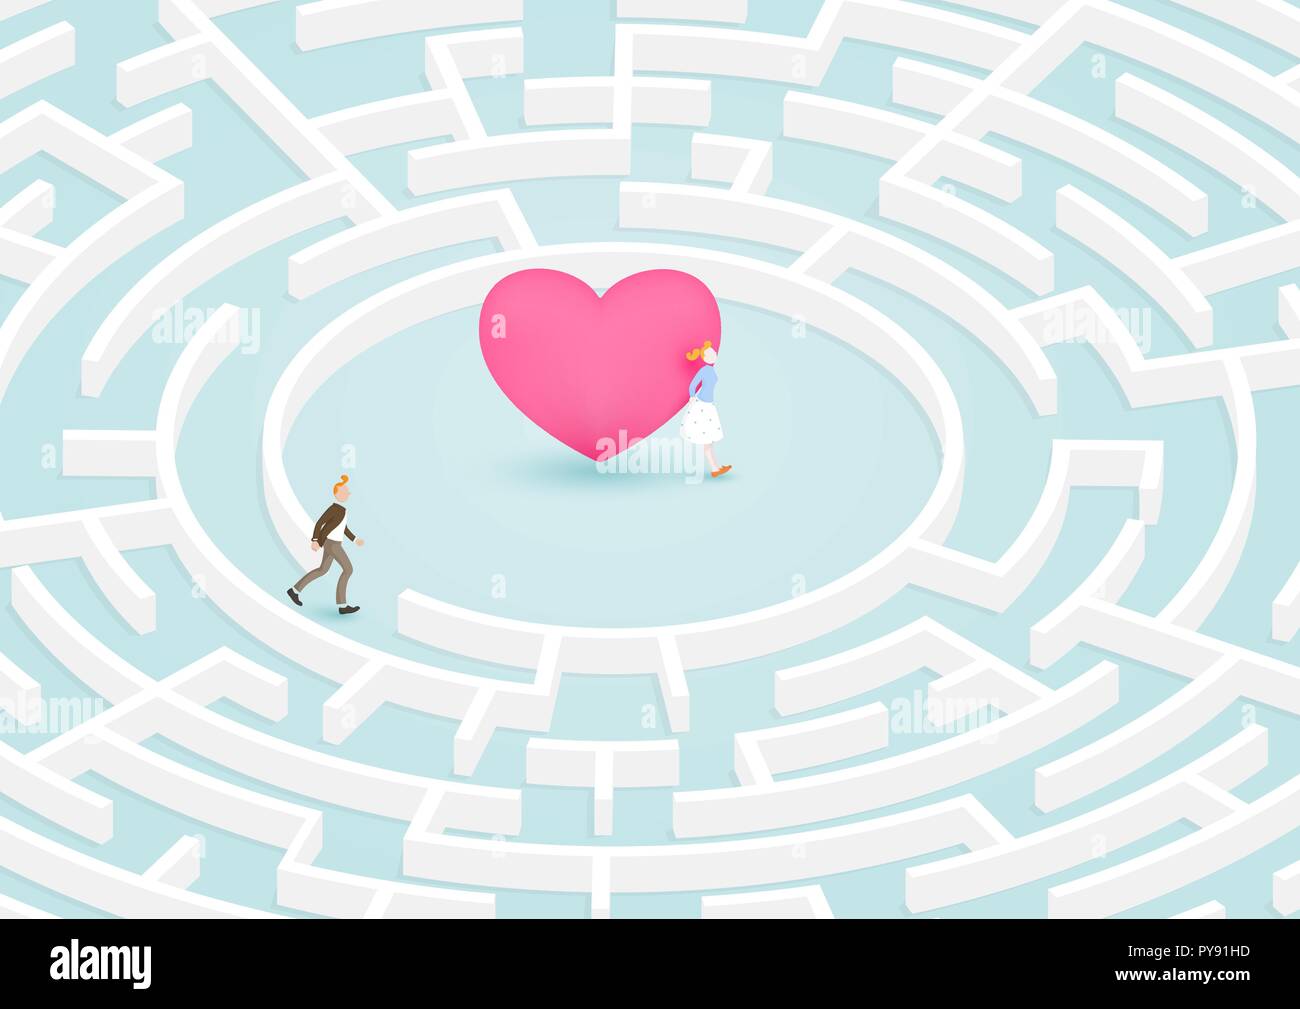 Mann Erfolg auf der Suche nach Freundin in kreisförmigen Labyrinth Labyrinth des Herzens. Vector Illustration für Liebe, Beziehung, zum Valentinstag Konzept. Stock Vektor